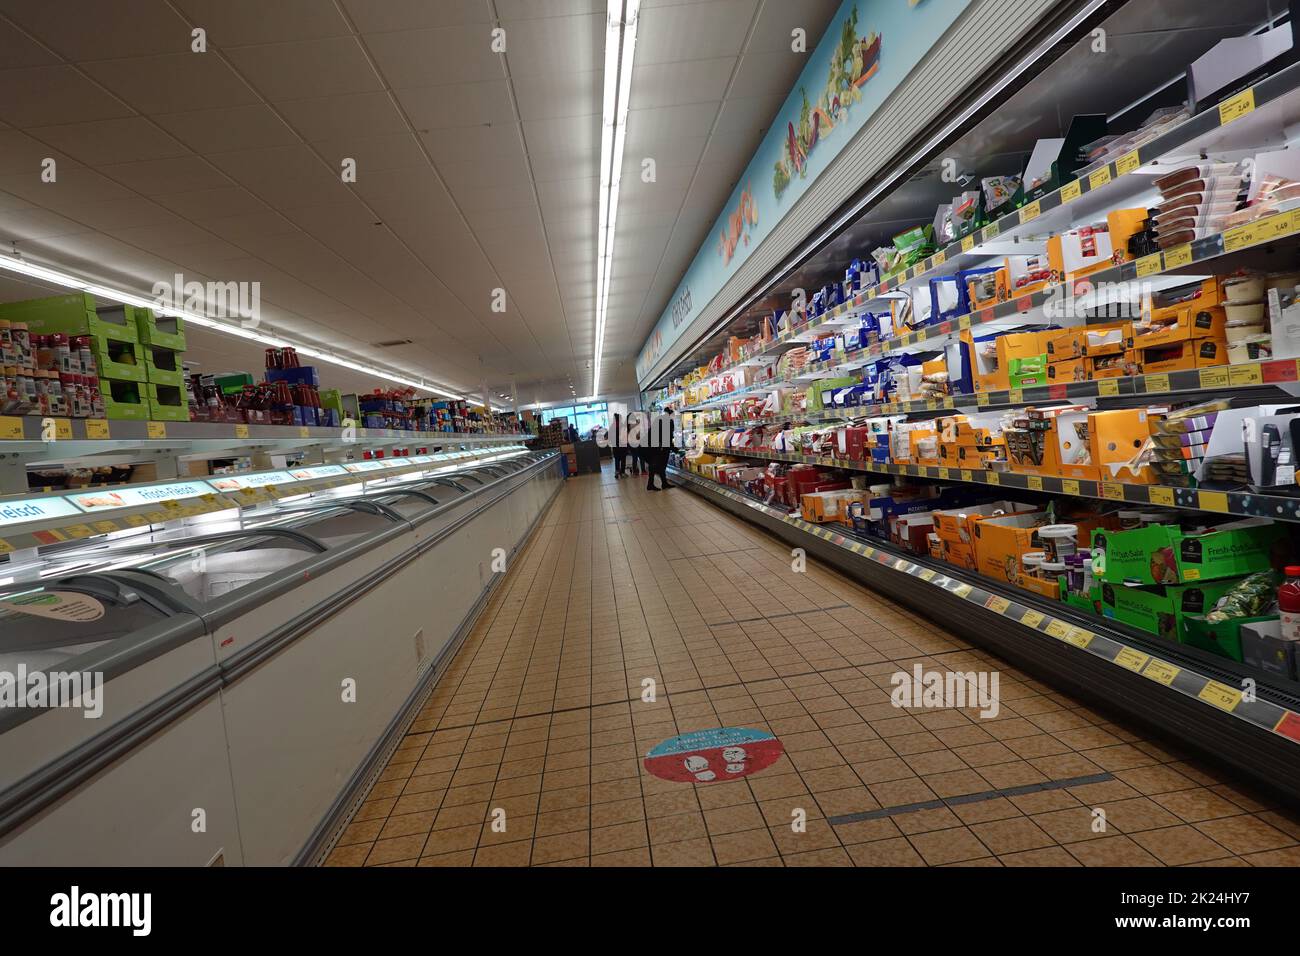 Kühltheke in einem Supermarkt - Symbolbild Foto Stock